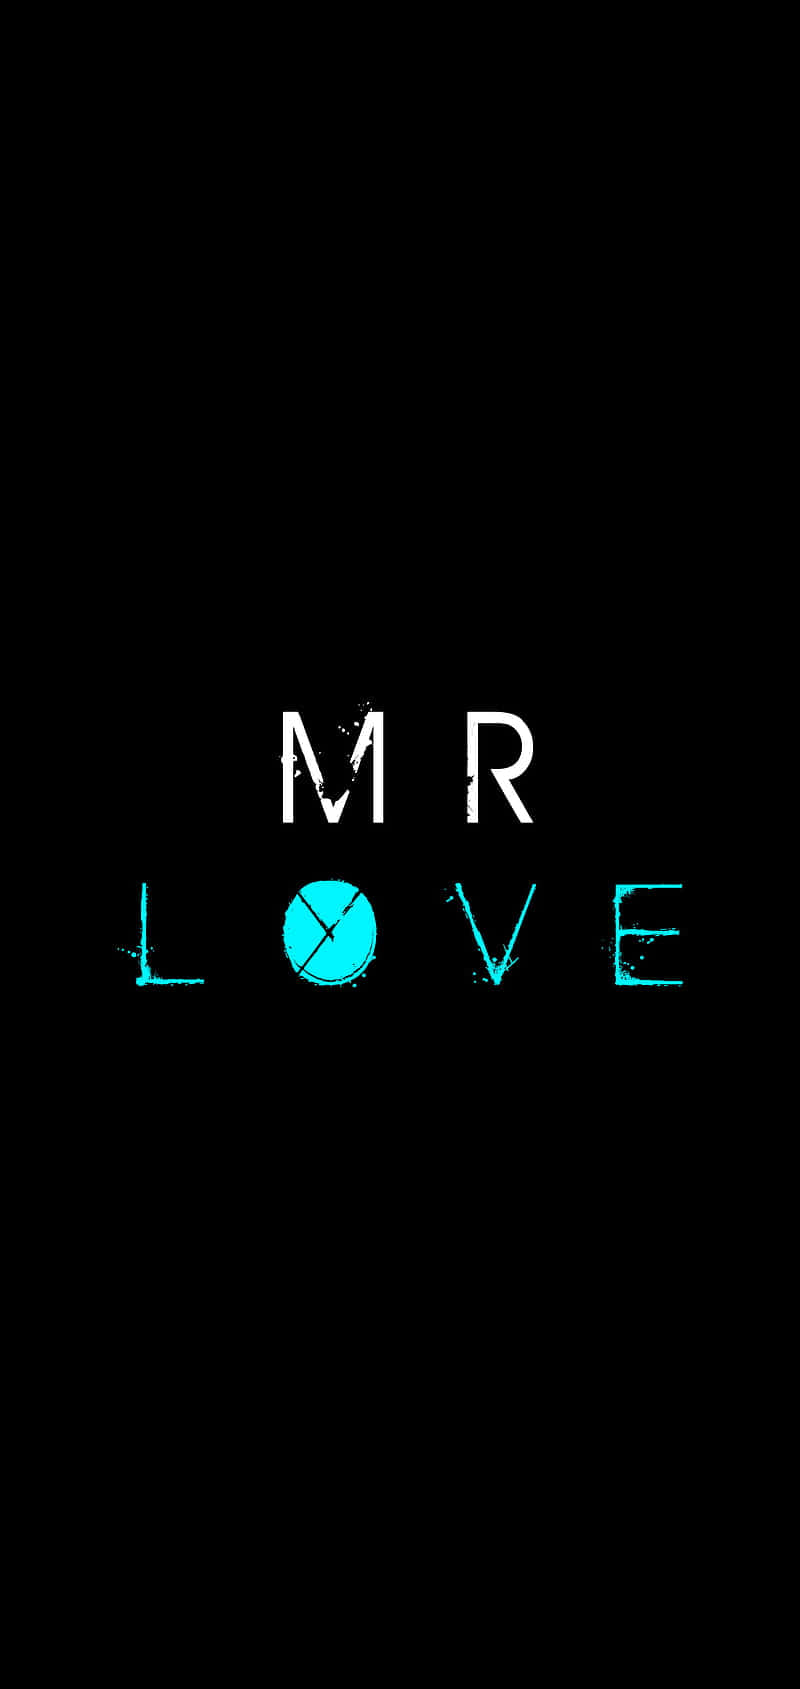 Srlove - Sr Love - Sr Love - Sr Love - Sr Love - M Fondo de pantalla